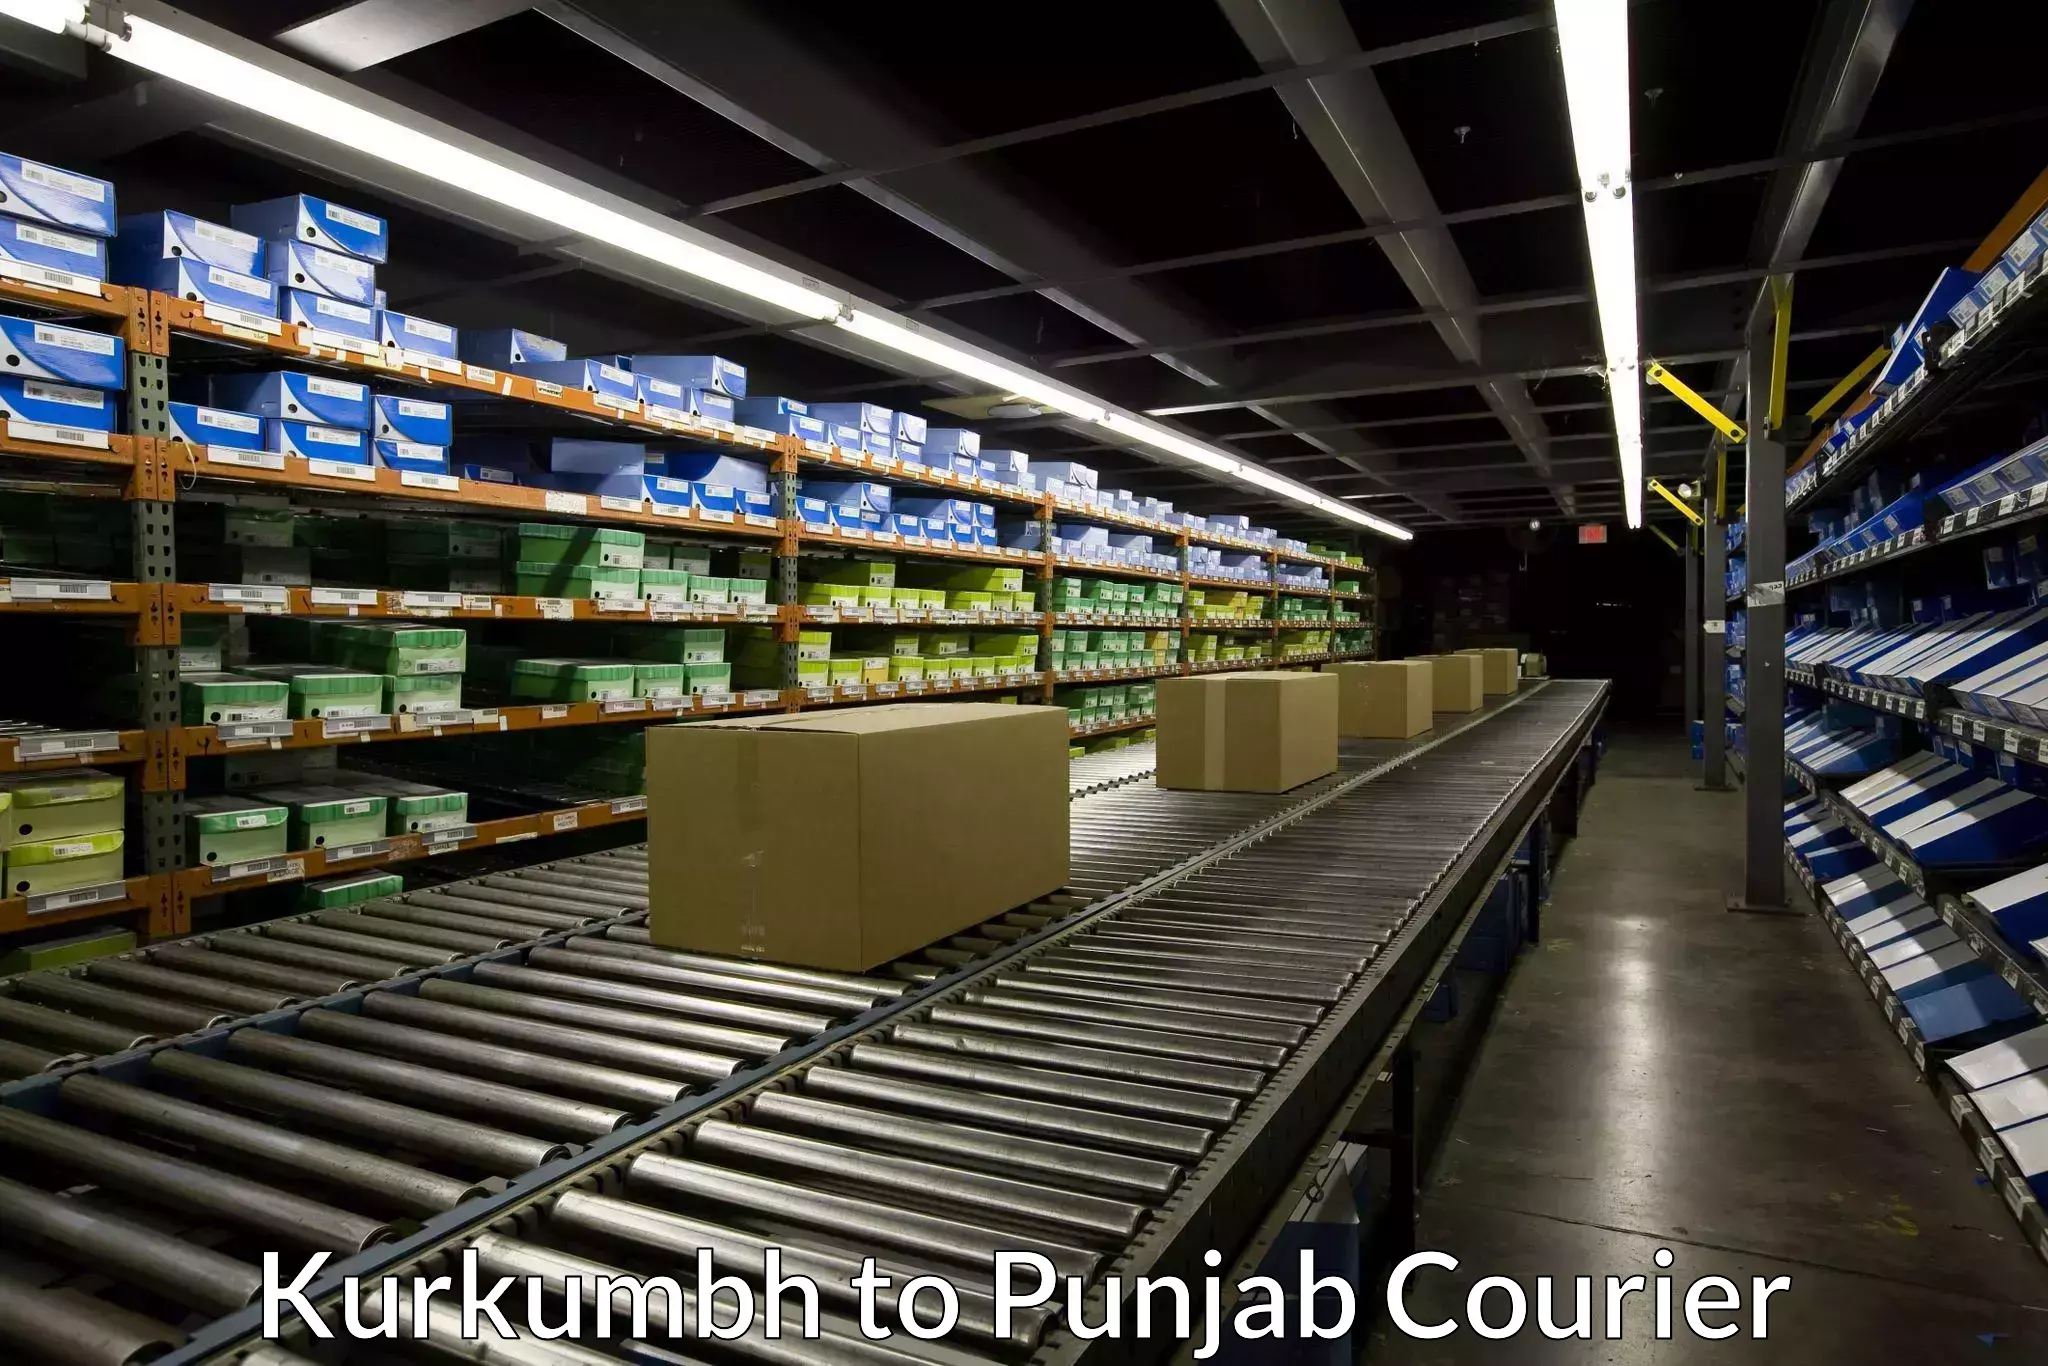 Smart shipping technology Kurkumbh to Punjab